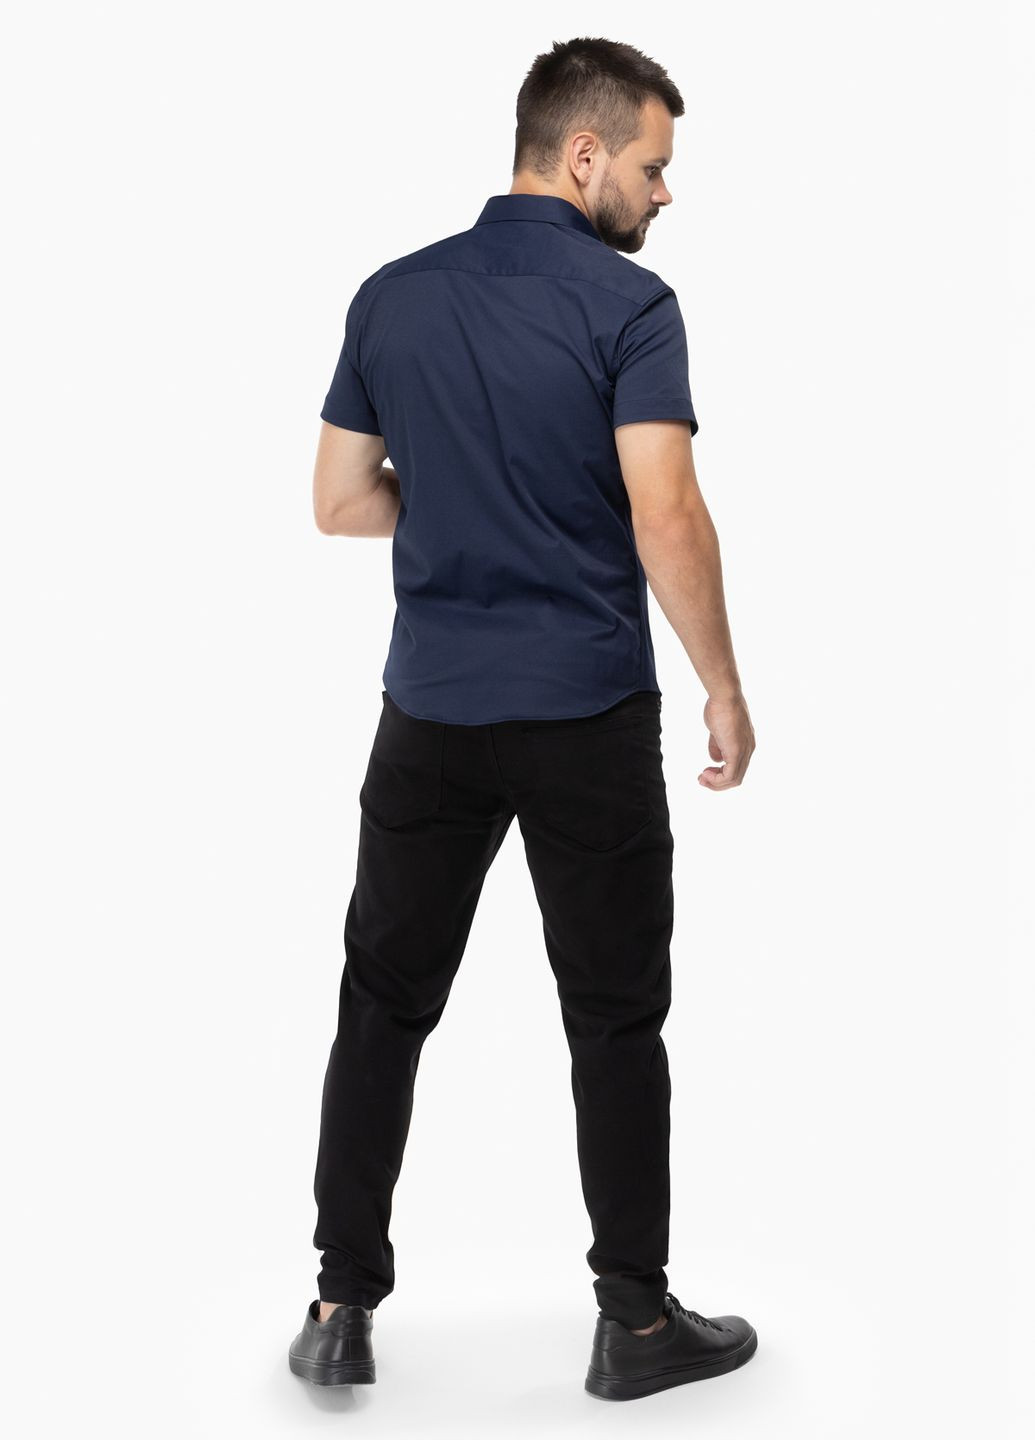 Темно-синяя повседневный рубашка Redpolo